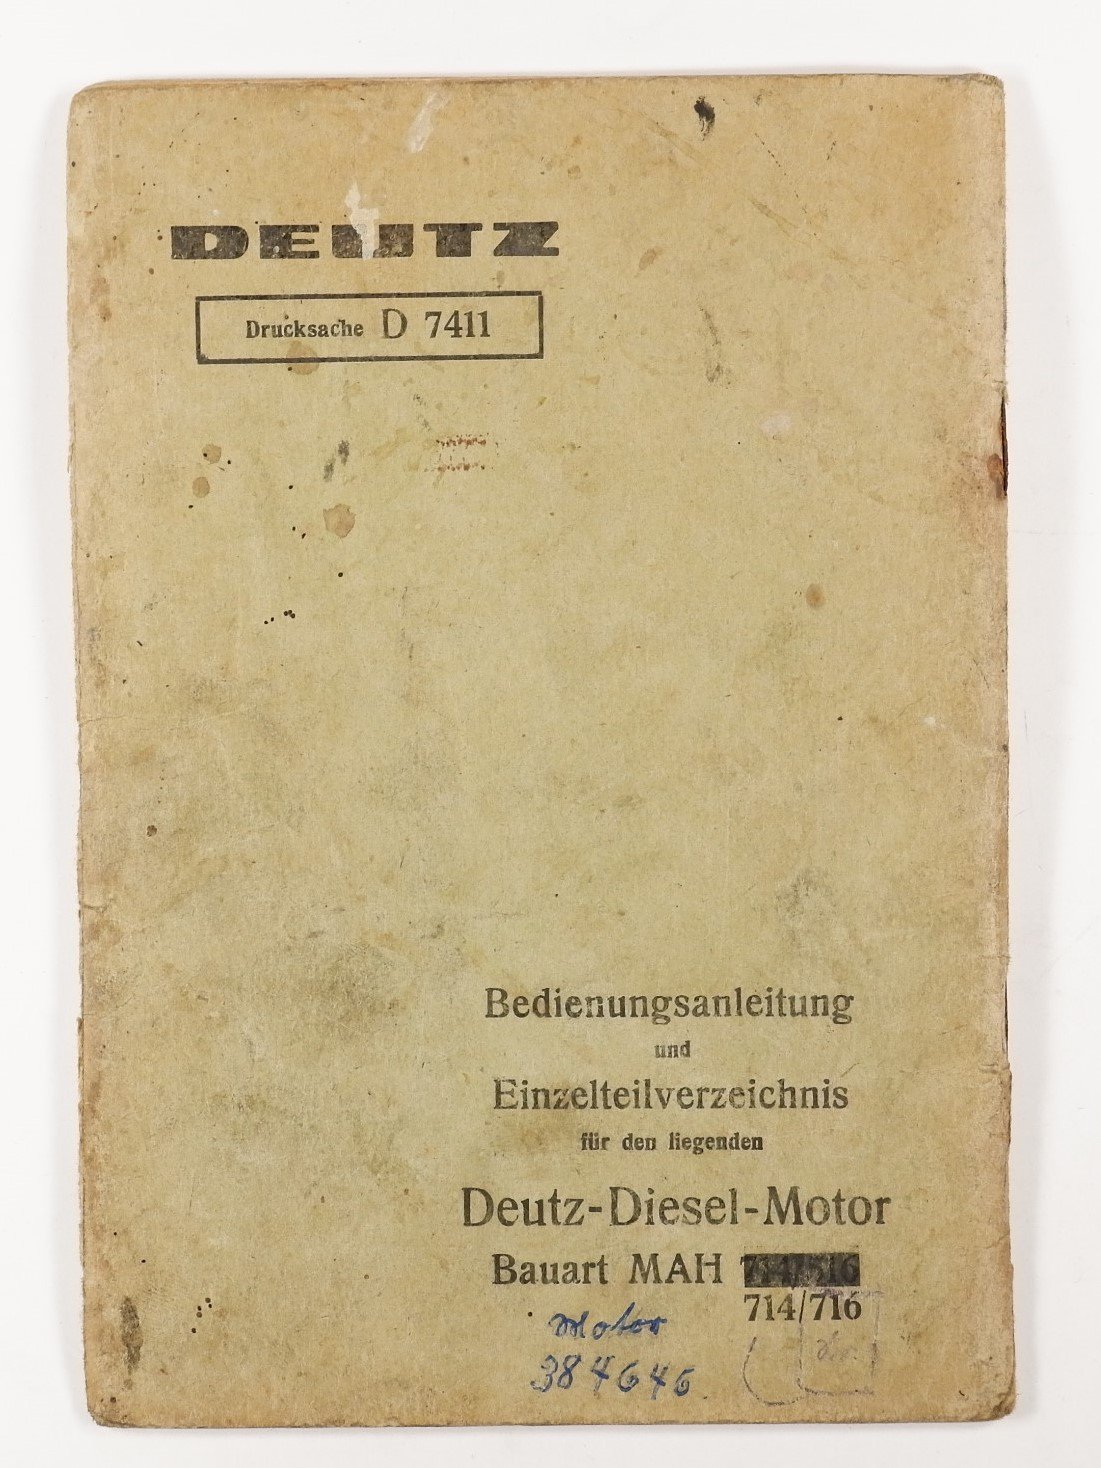 Bedingungsanleitung und Einzelteilverzeichnis: Deutz-Diesel-Motor MAH 714/716 (Volkskunde- und Freilichtmuseum Roscheider Hof RR-F)